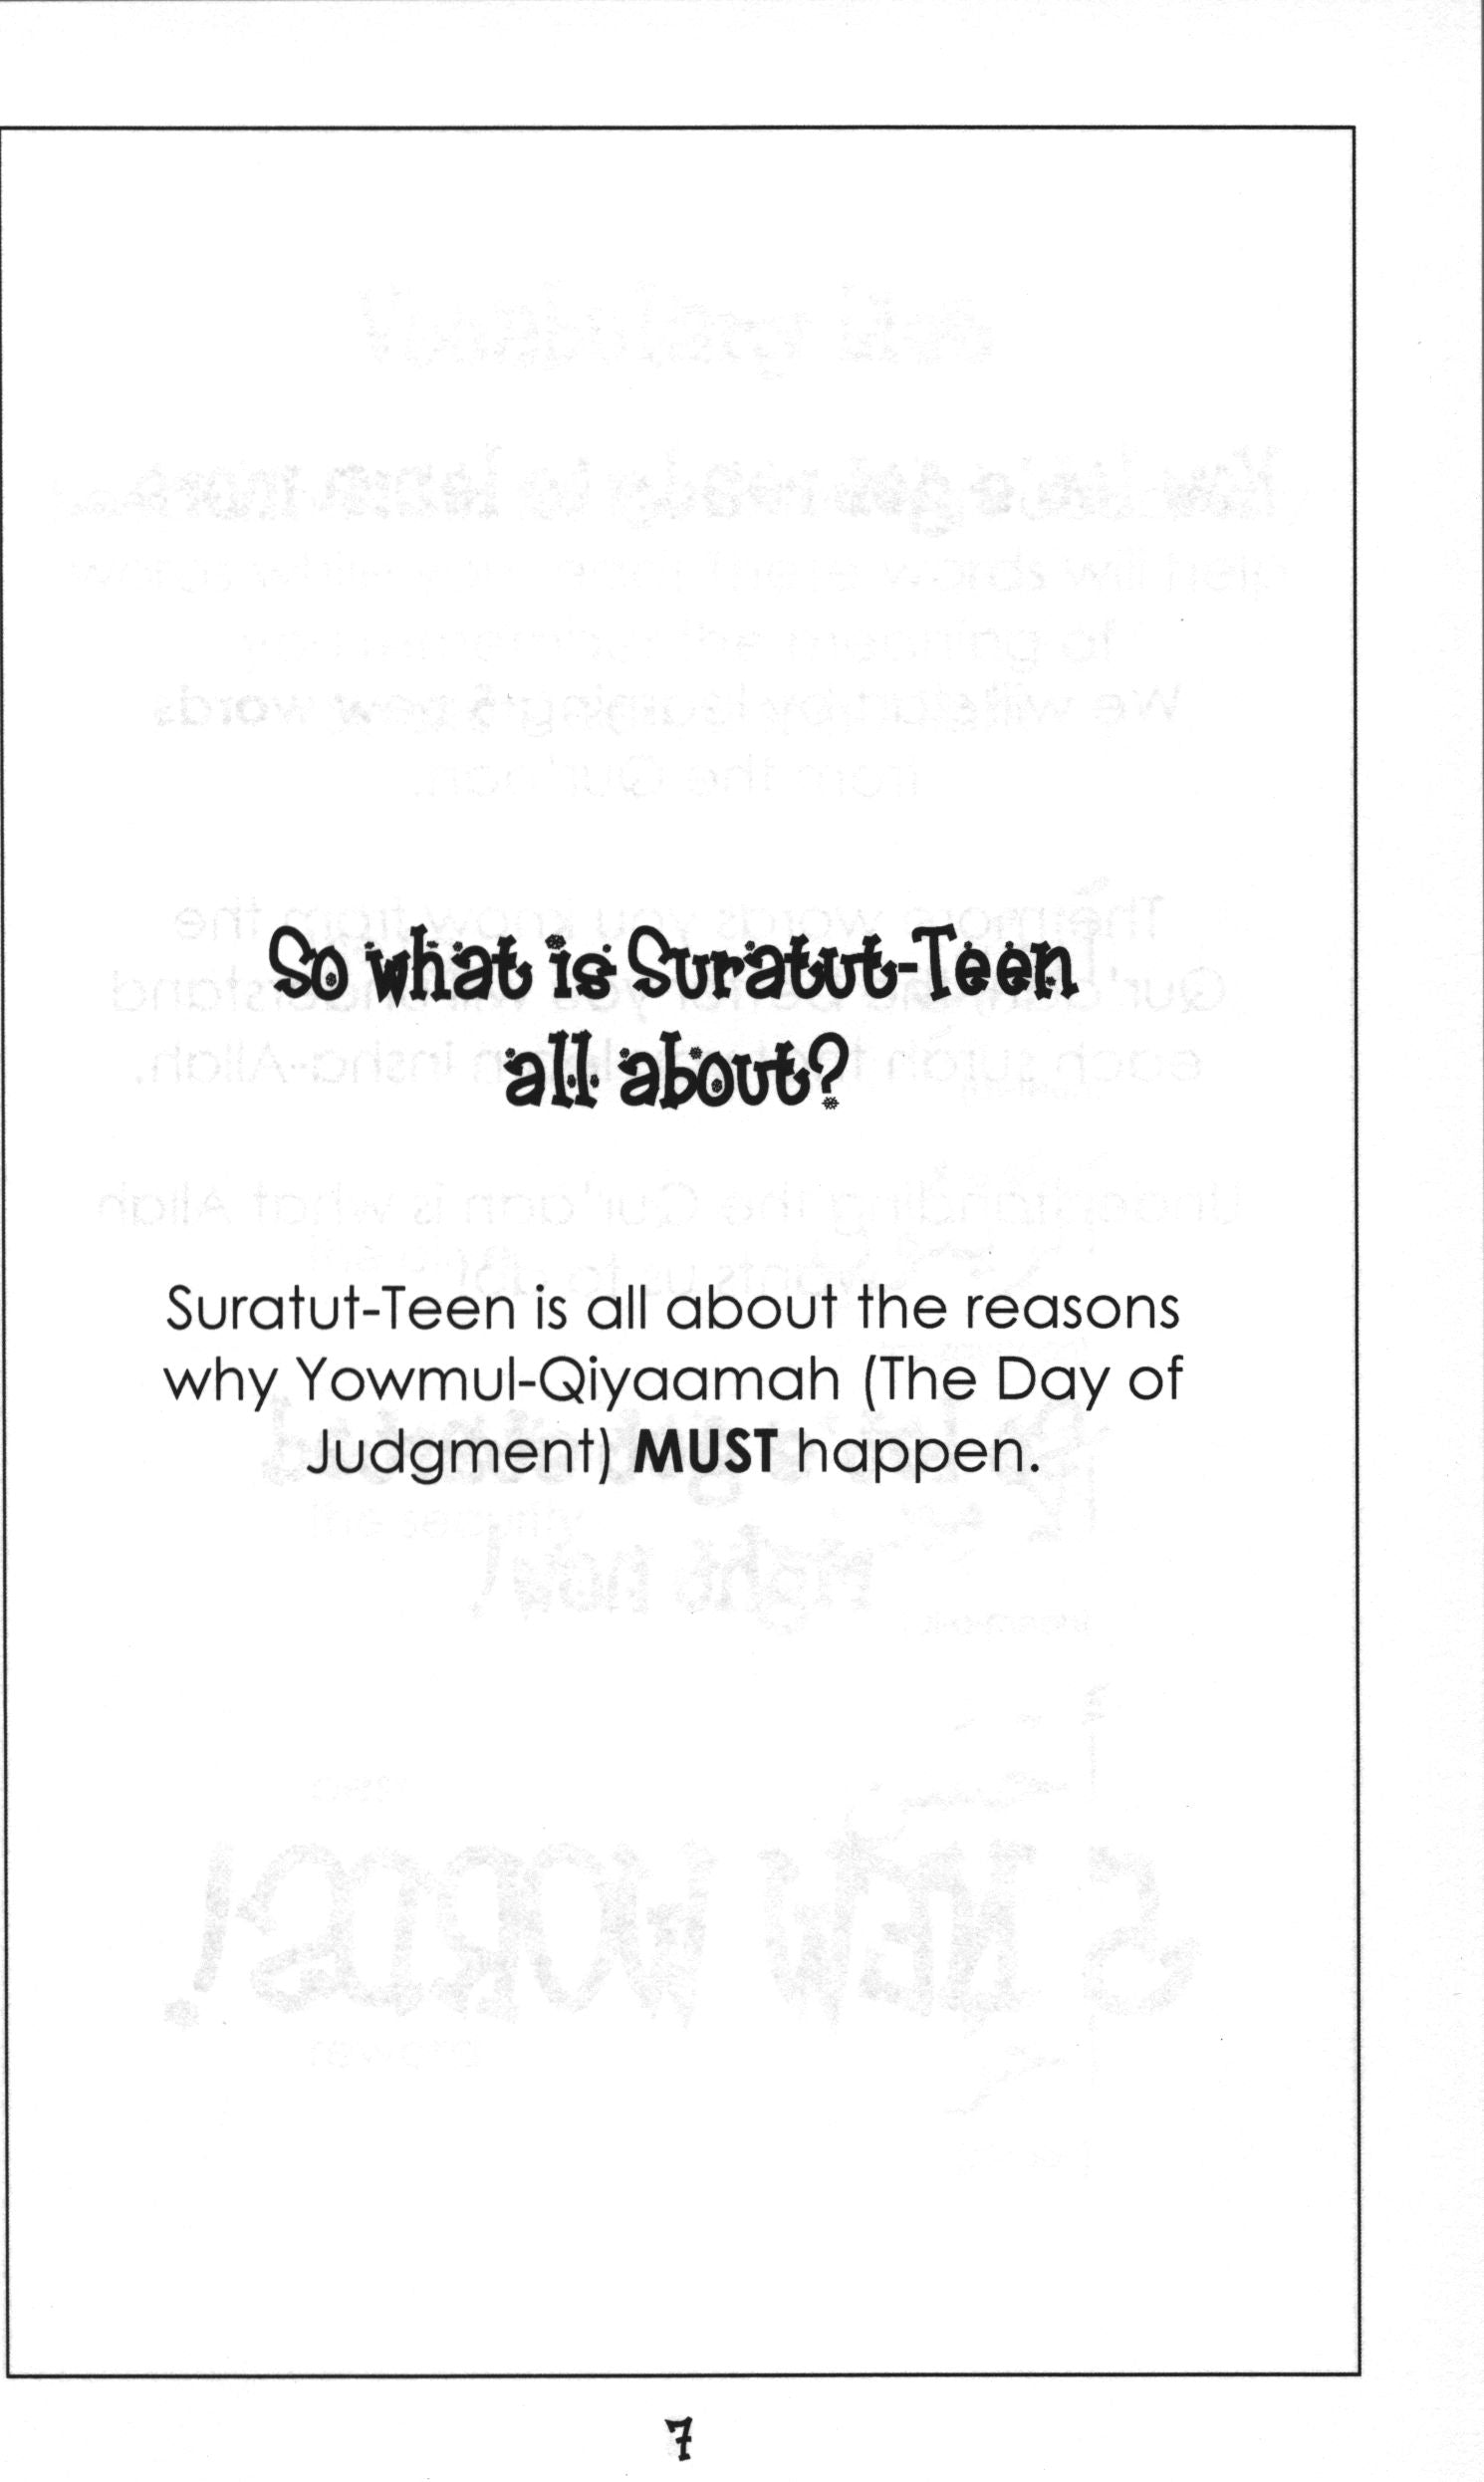 Mini Tafseer Book Suratut-Teen (Surah 95)